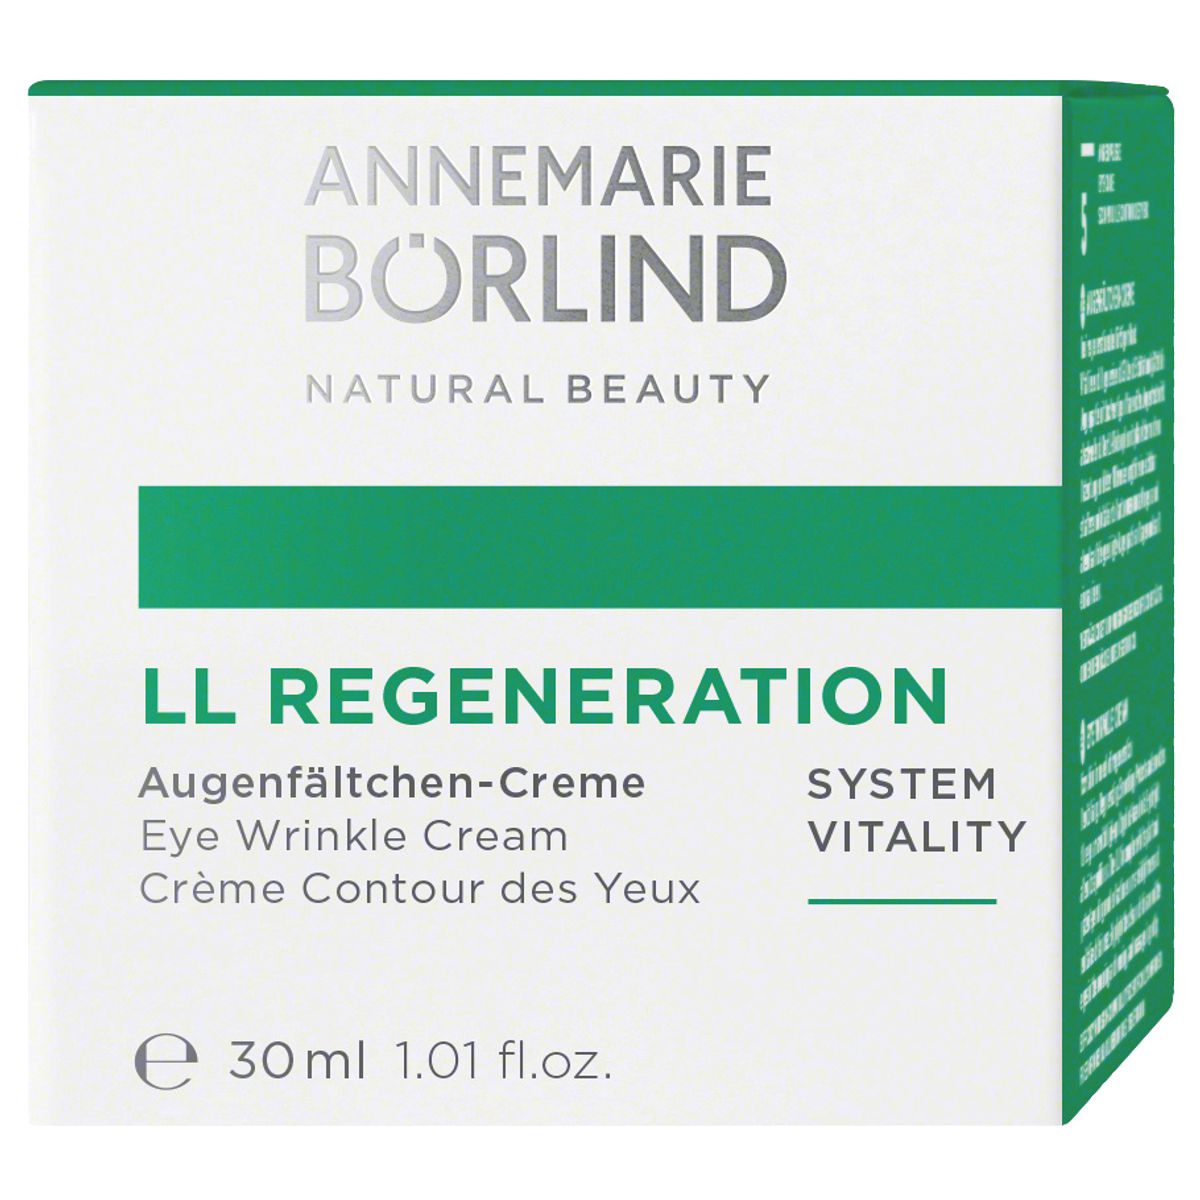 Annemarie Börlind LL Regeneration System Vitality Augenfältchen Creme